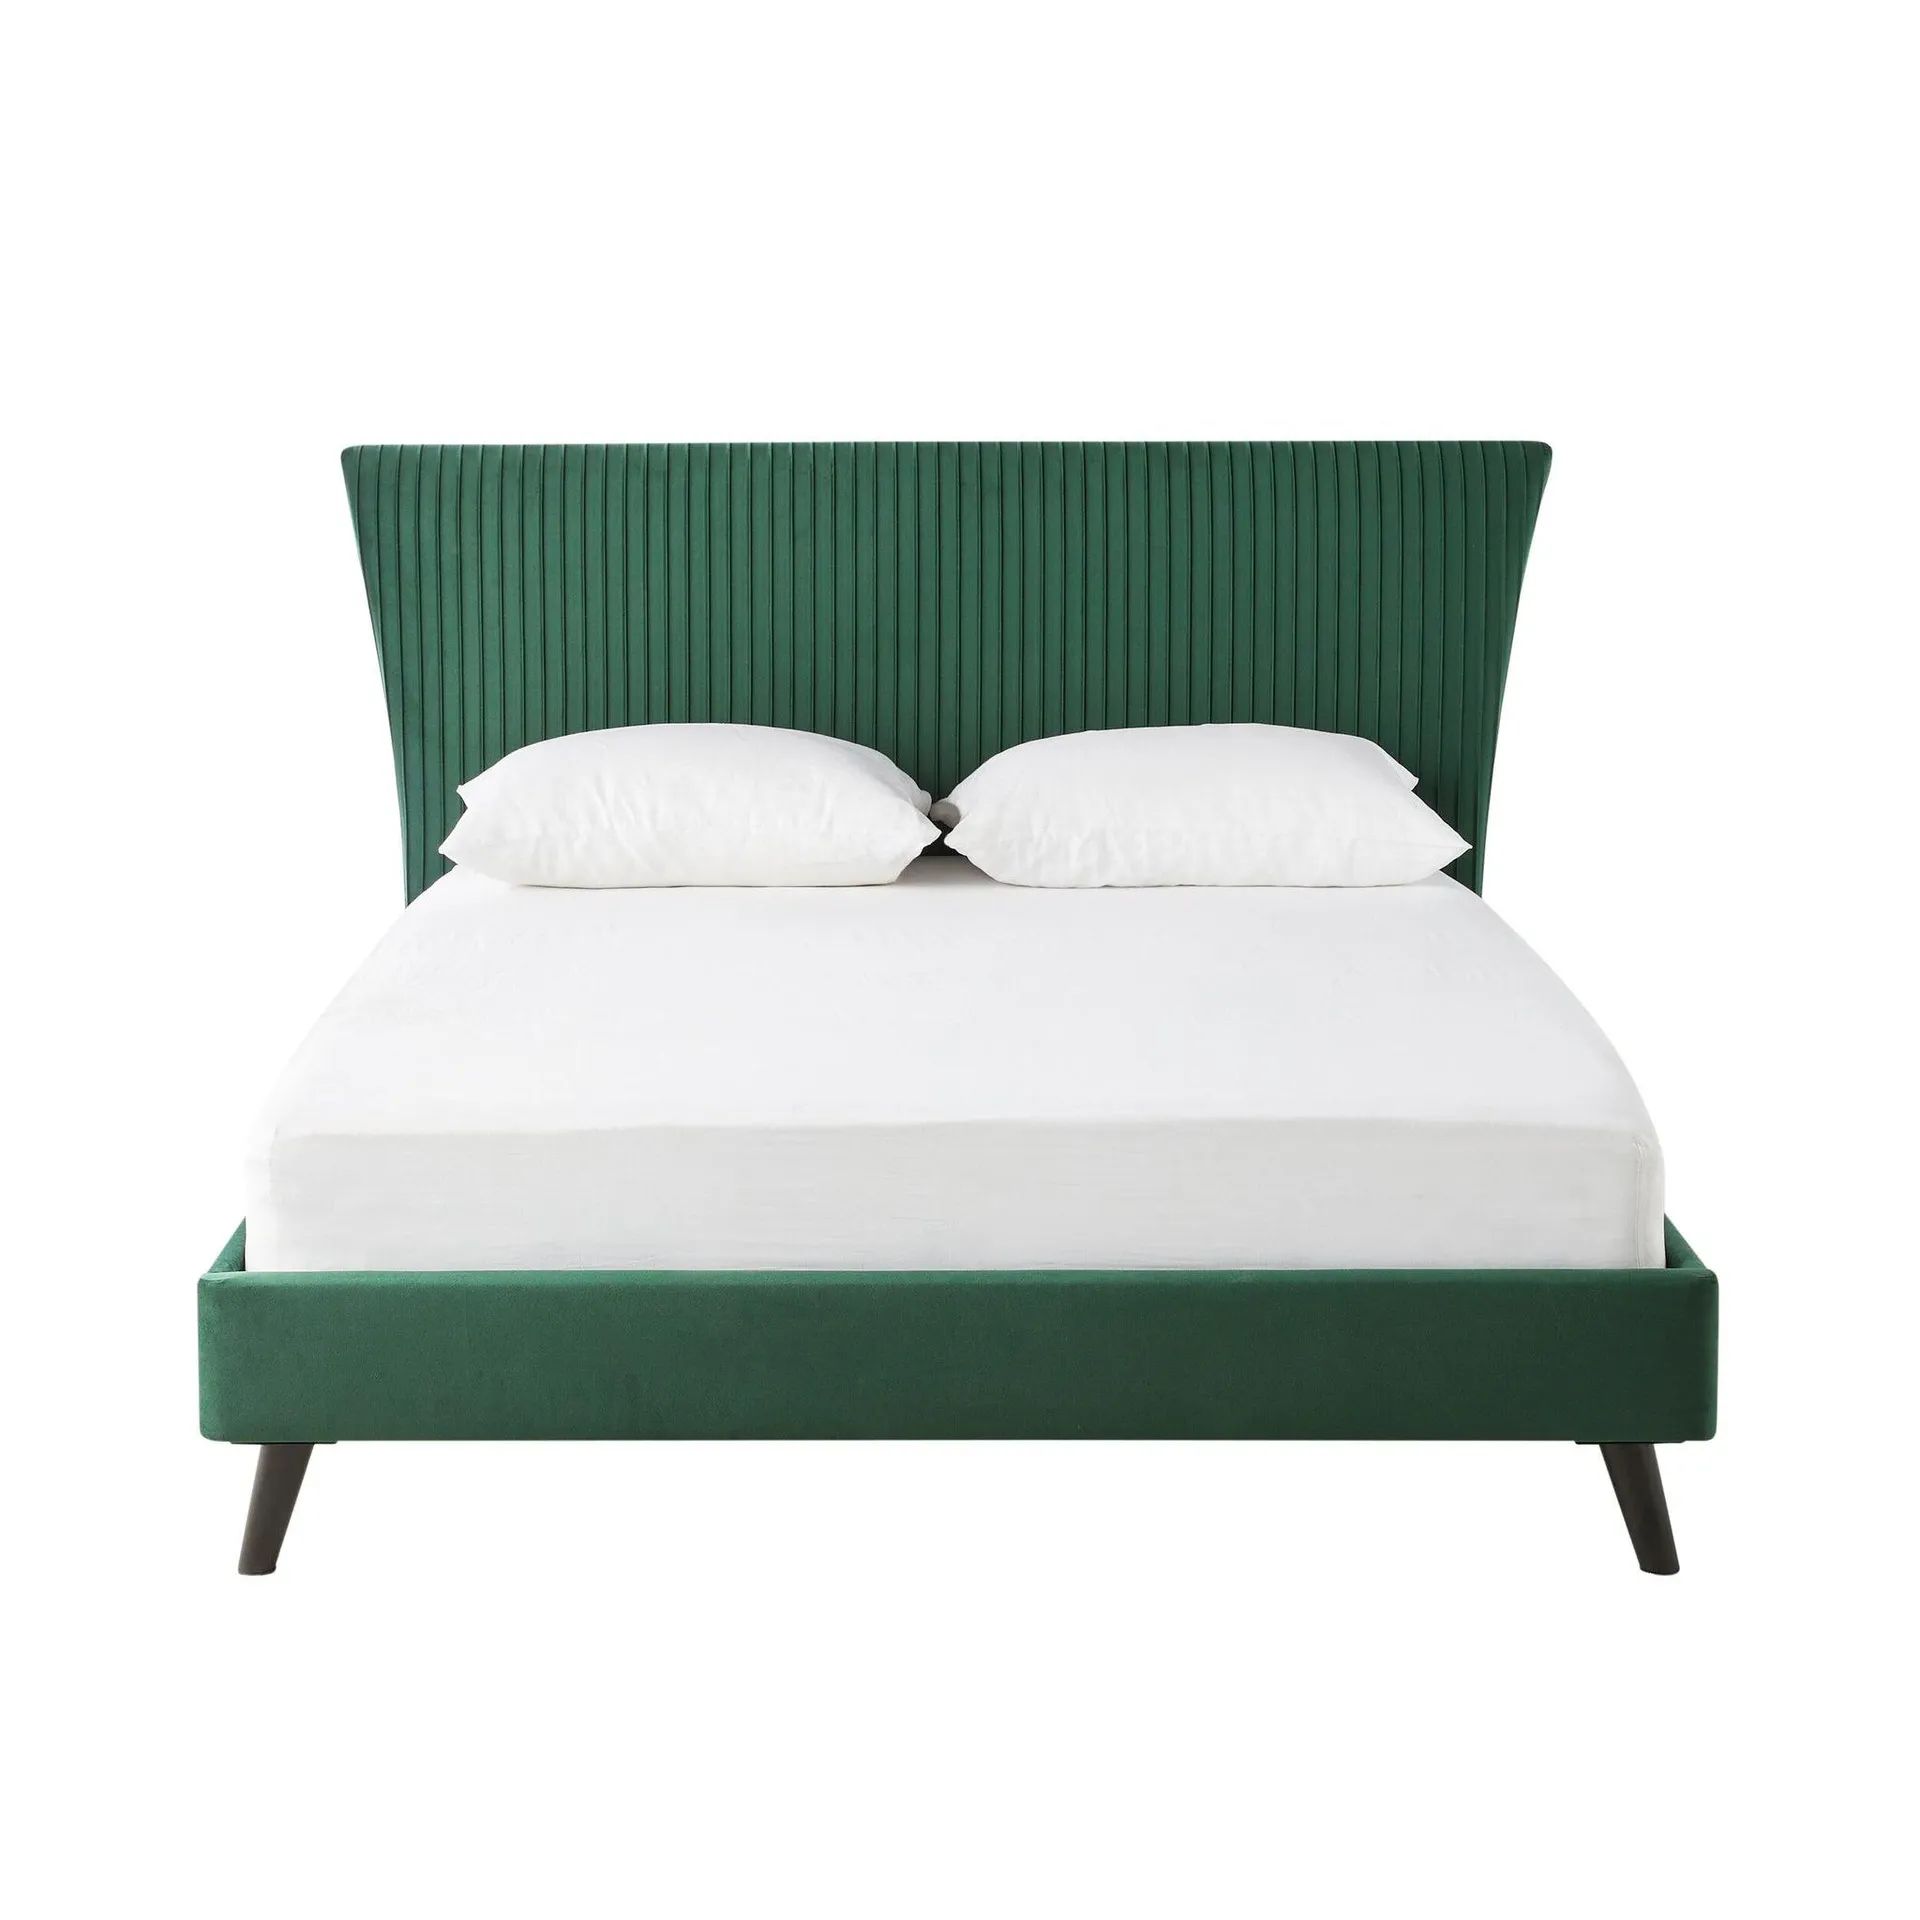 Pleat Bed Queen Emerald